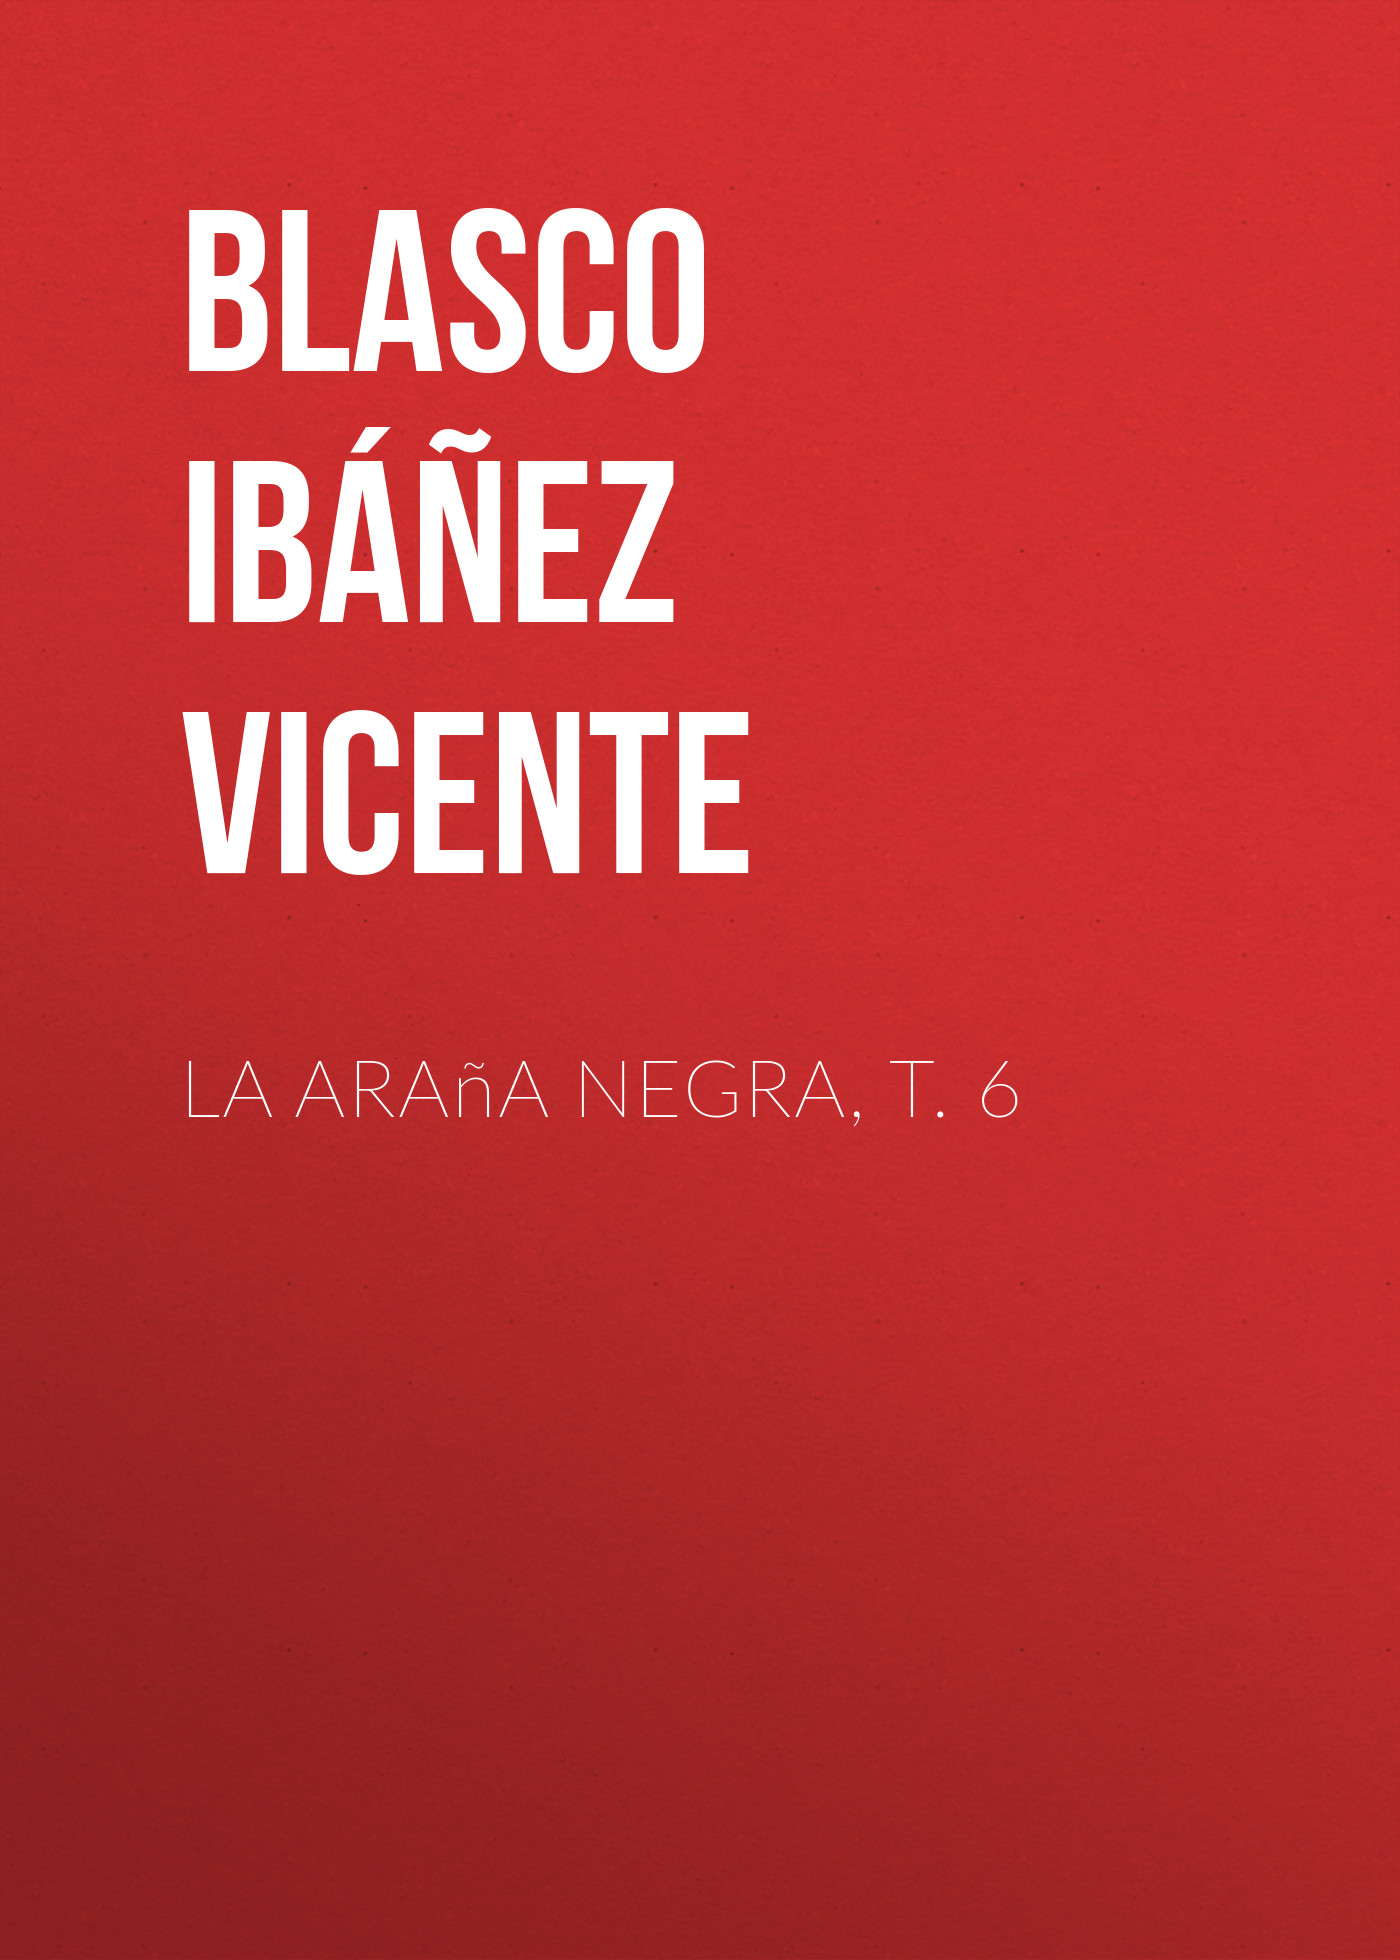 Книга La araña negra, t. 6 из серии , созданная Vicente Blasco Ibáñez, может относится к жанру Иностранные языки, Зарубежная старинная литература, Зарубежная классика. Стоимость электронной книги La araña negra, t. 6 с идентификатором 24178844 составляет 0 руб.